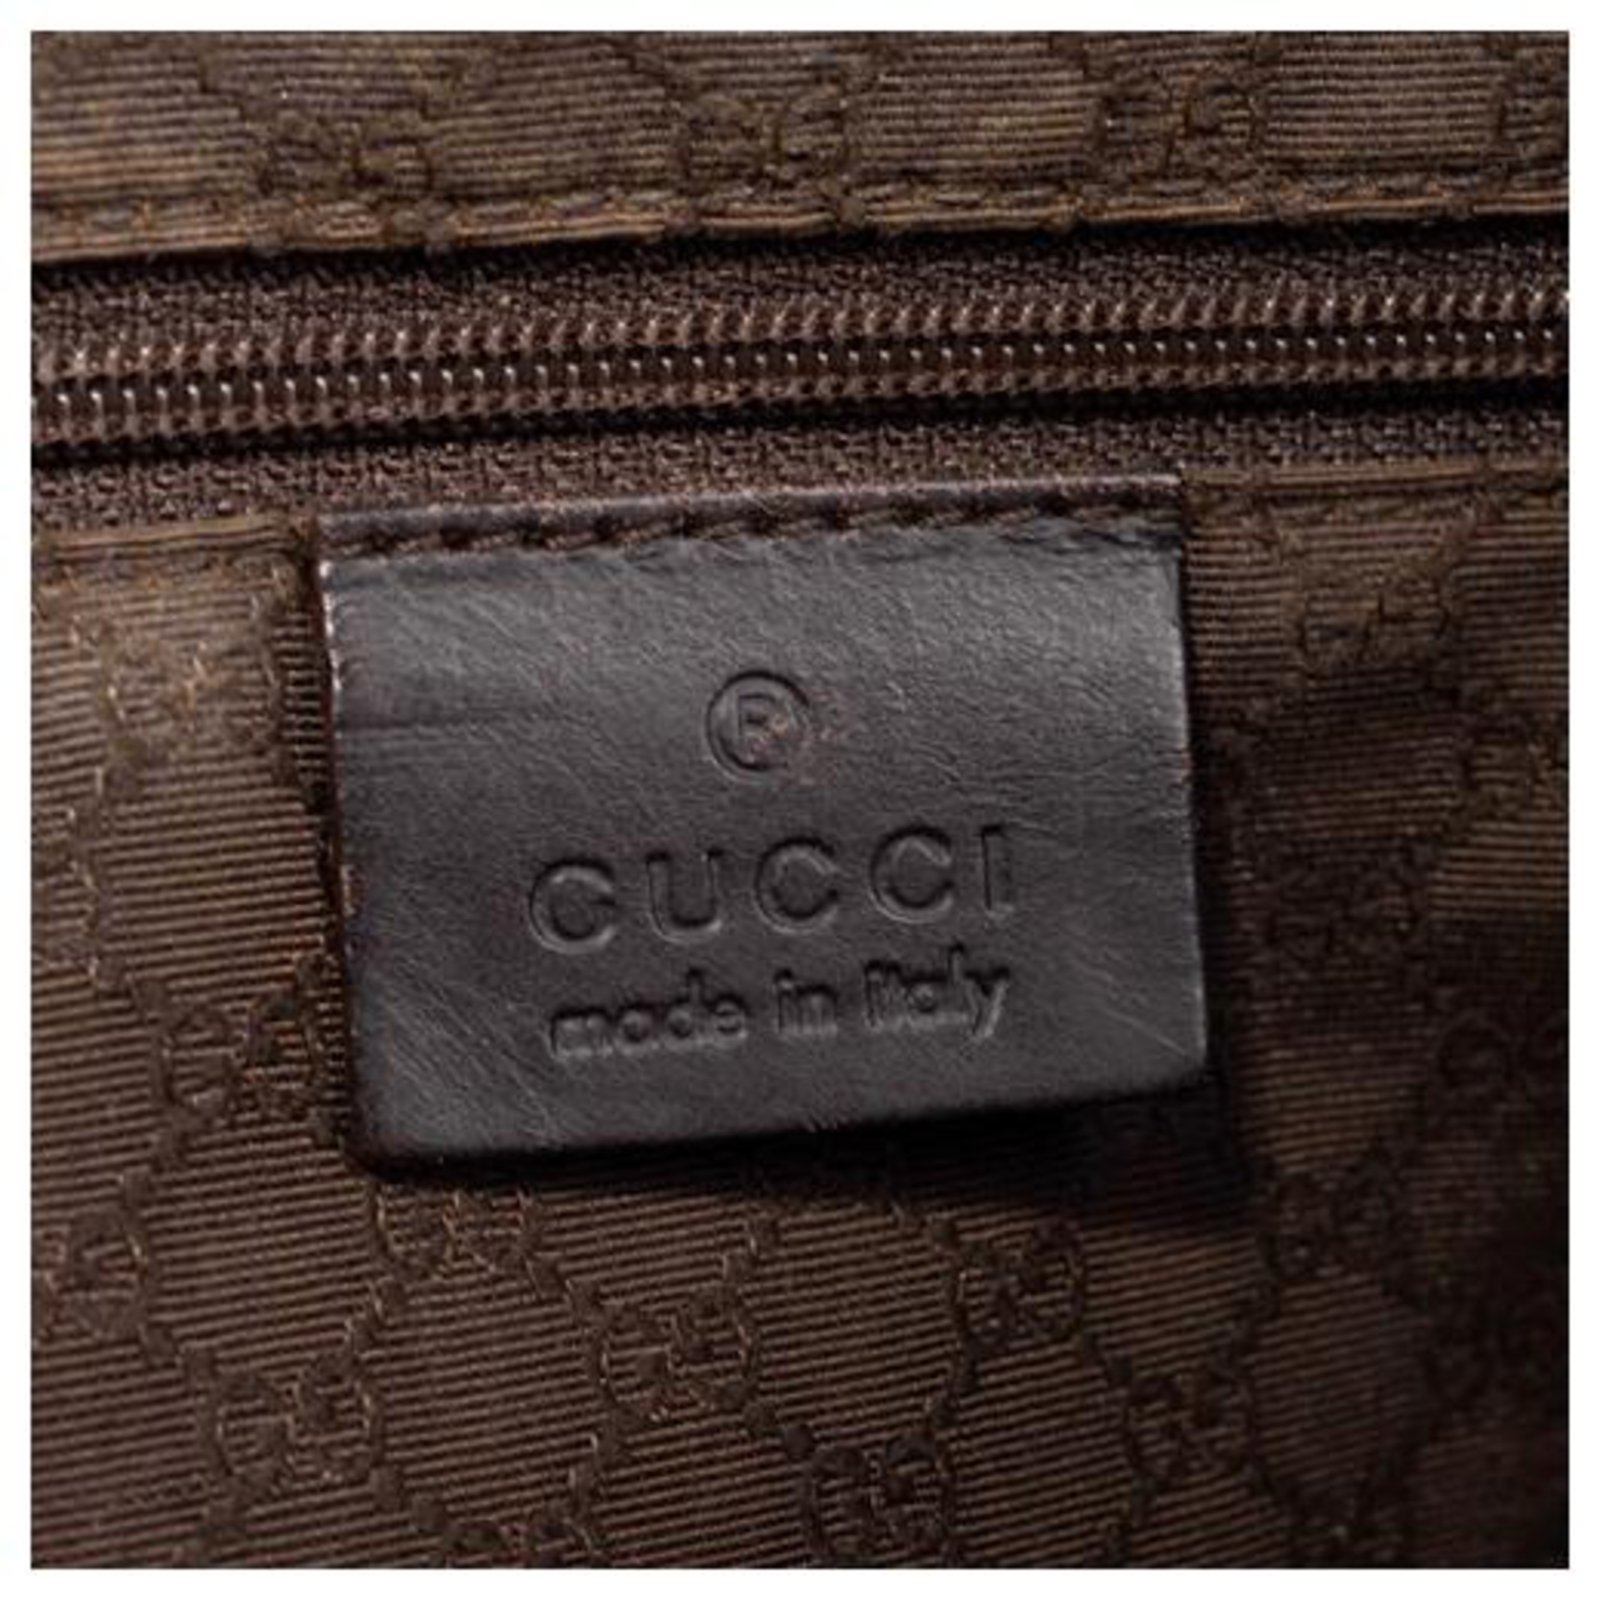 Gucci Rare Vintage Tom Ford Era Bamboo Handle Web Strap Shoulder Bag ...